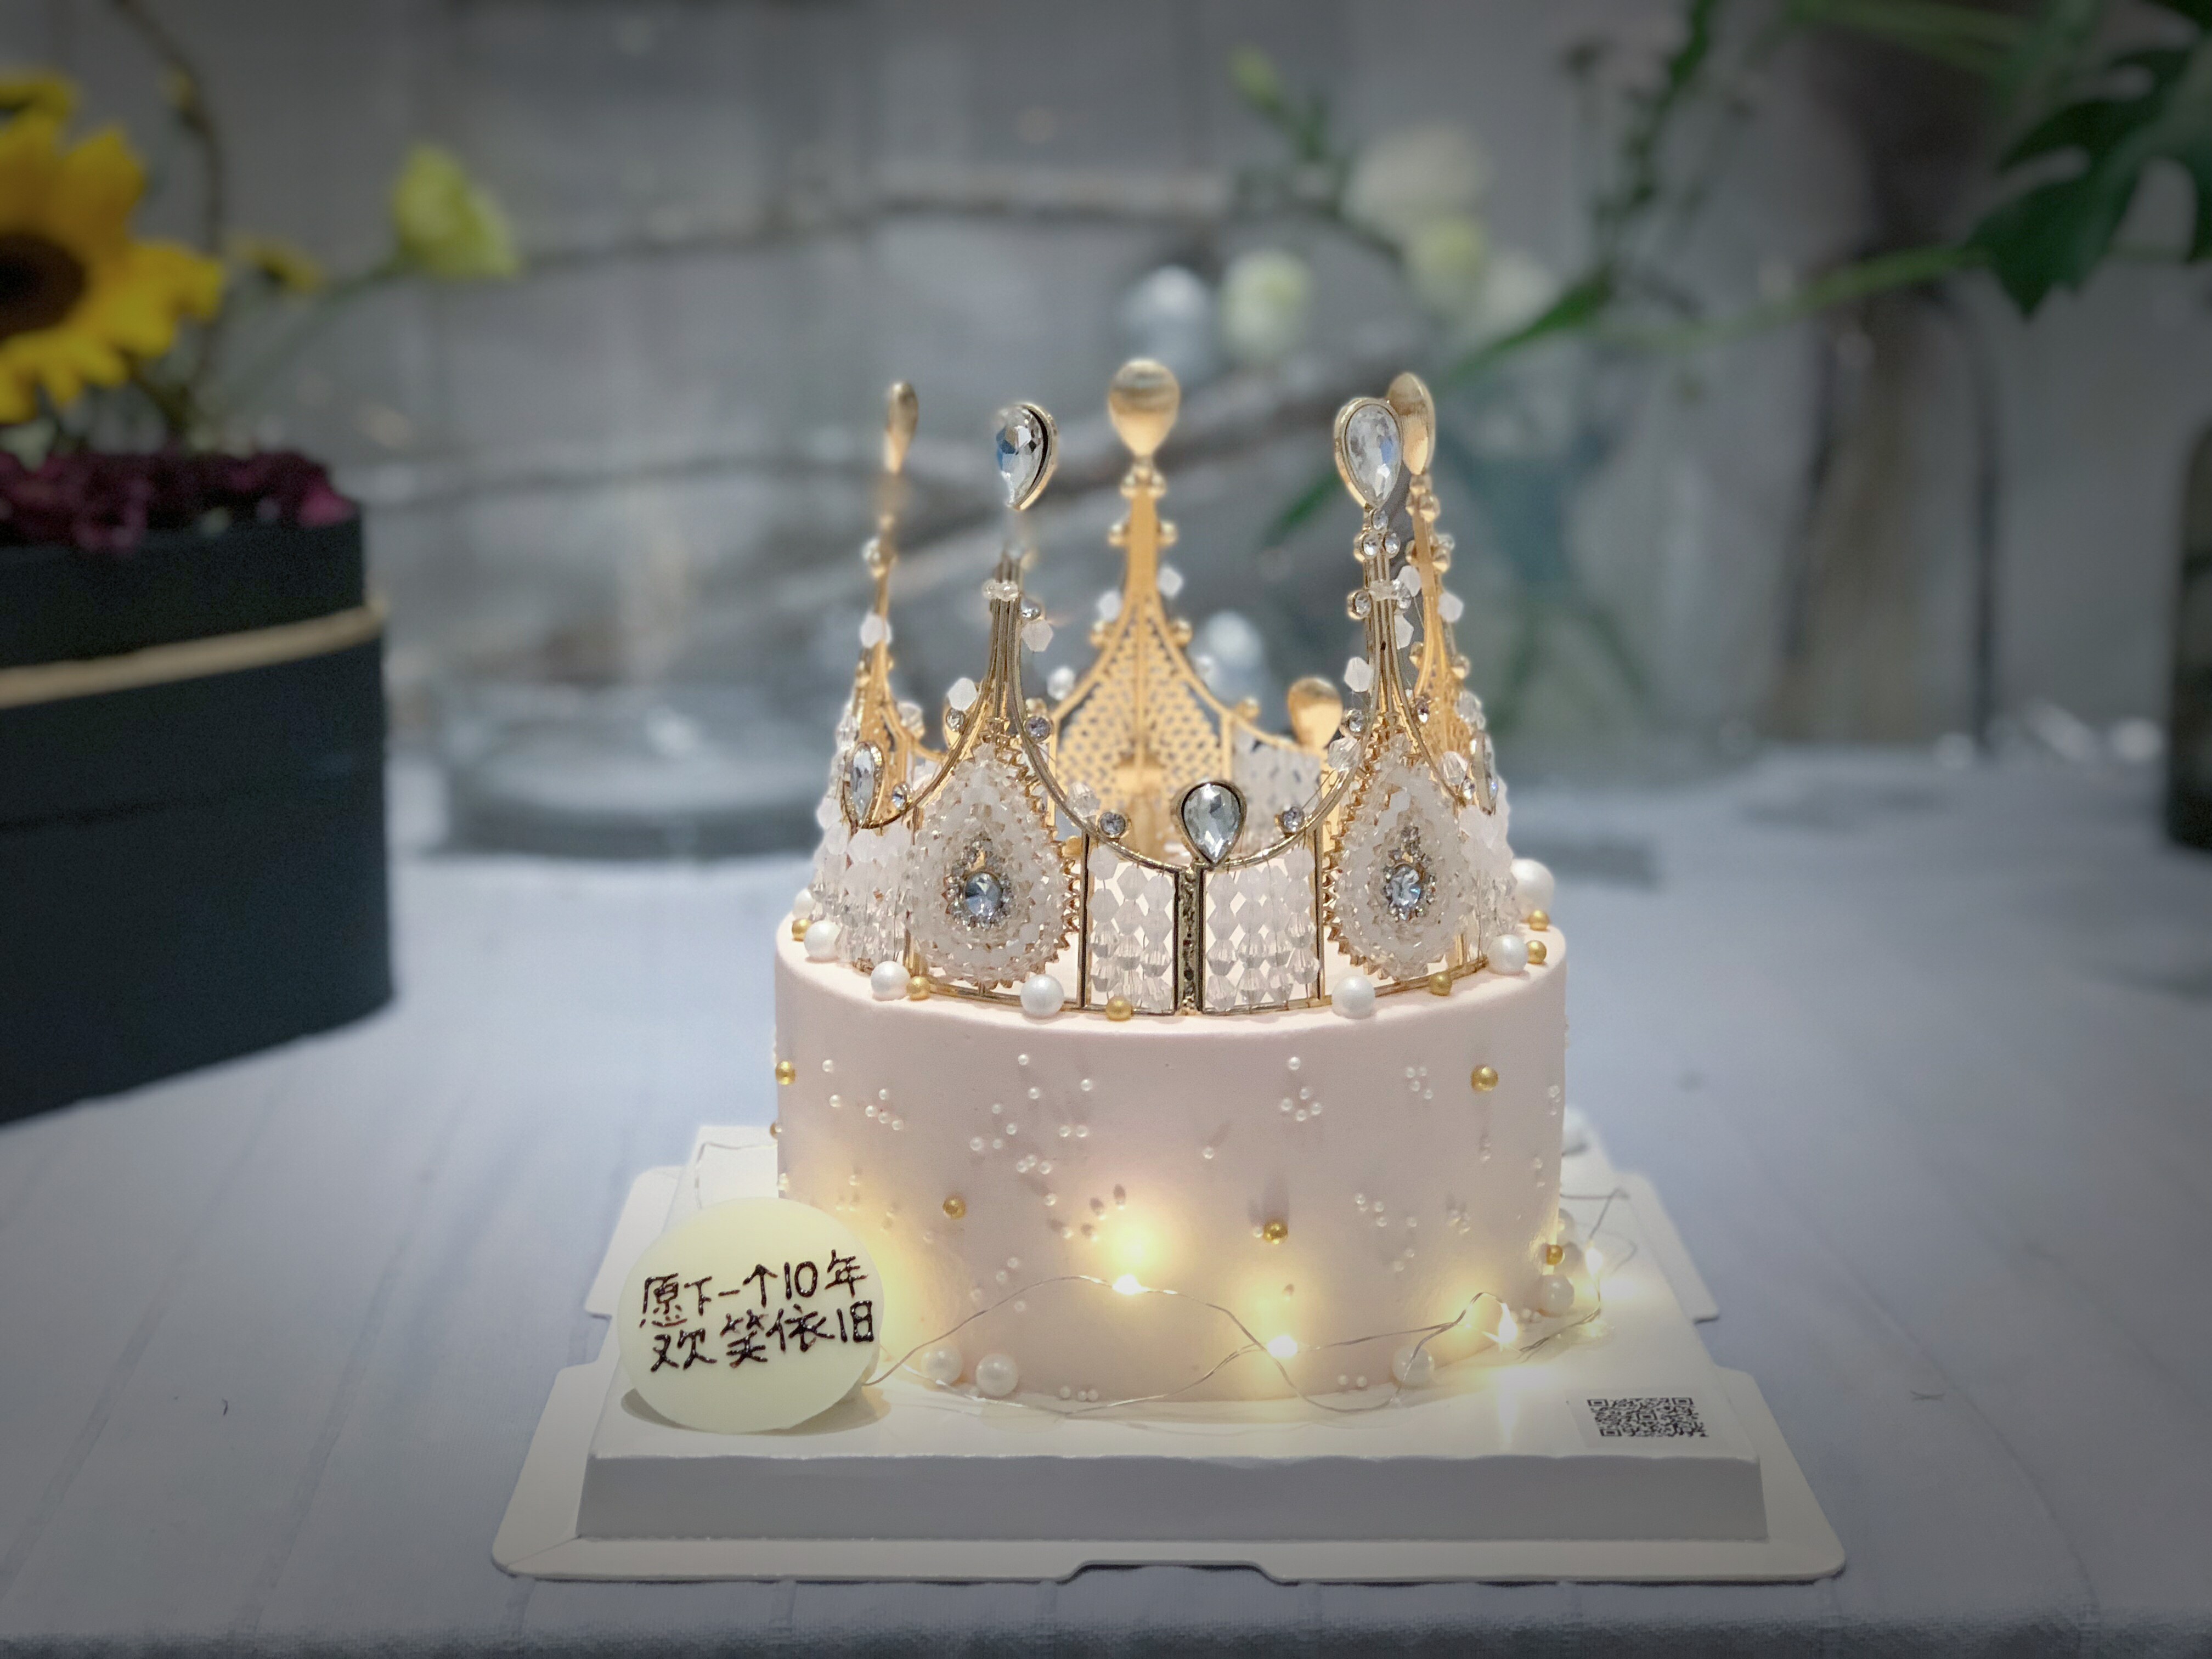 【女神皇冠】生日蛋糕 皇冠蛋糕 广州同城